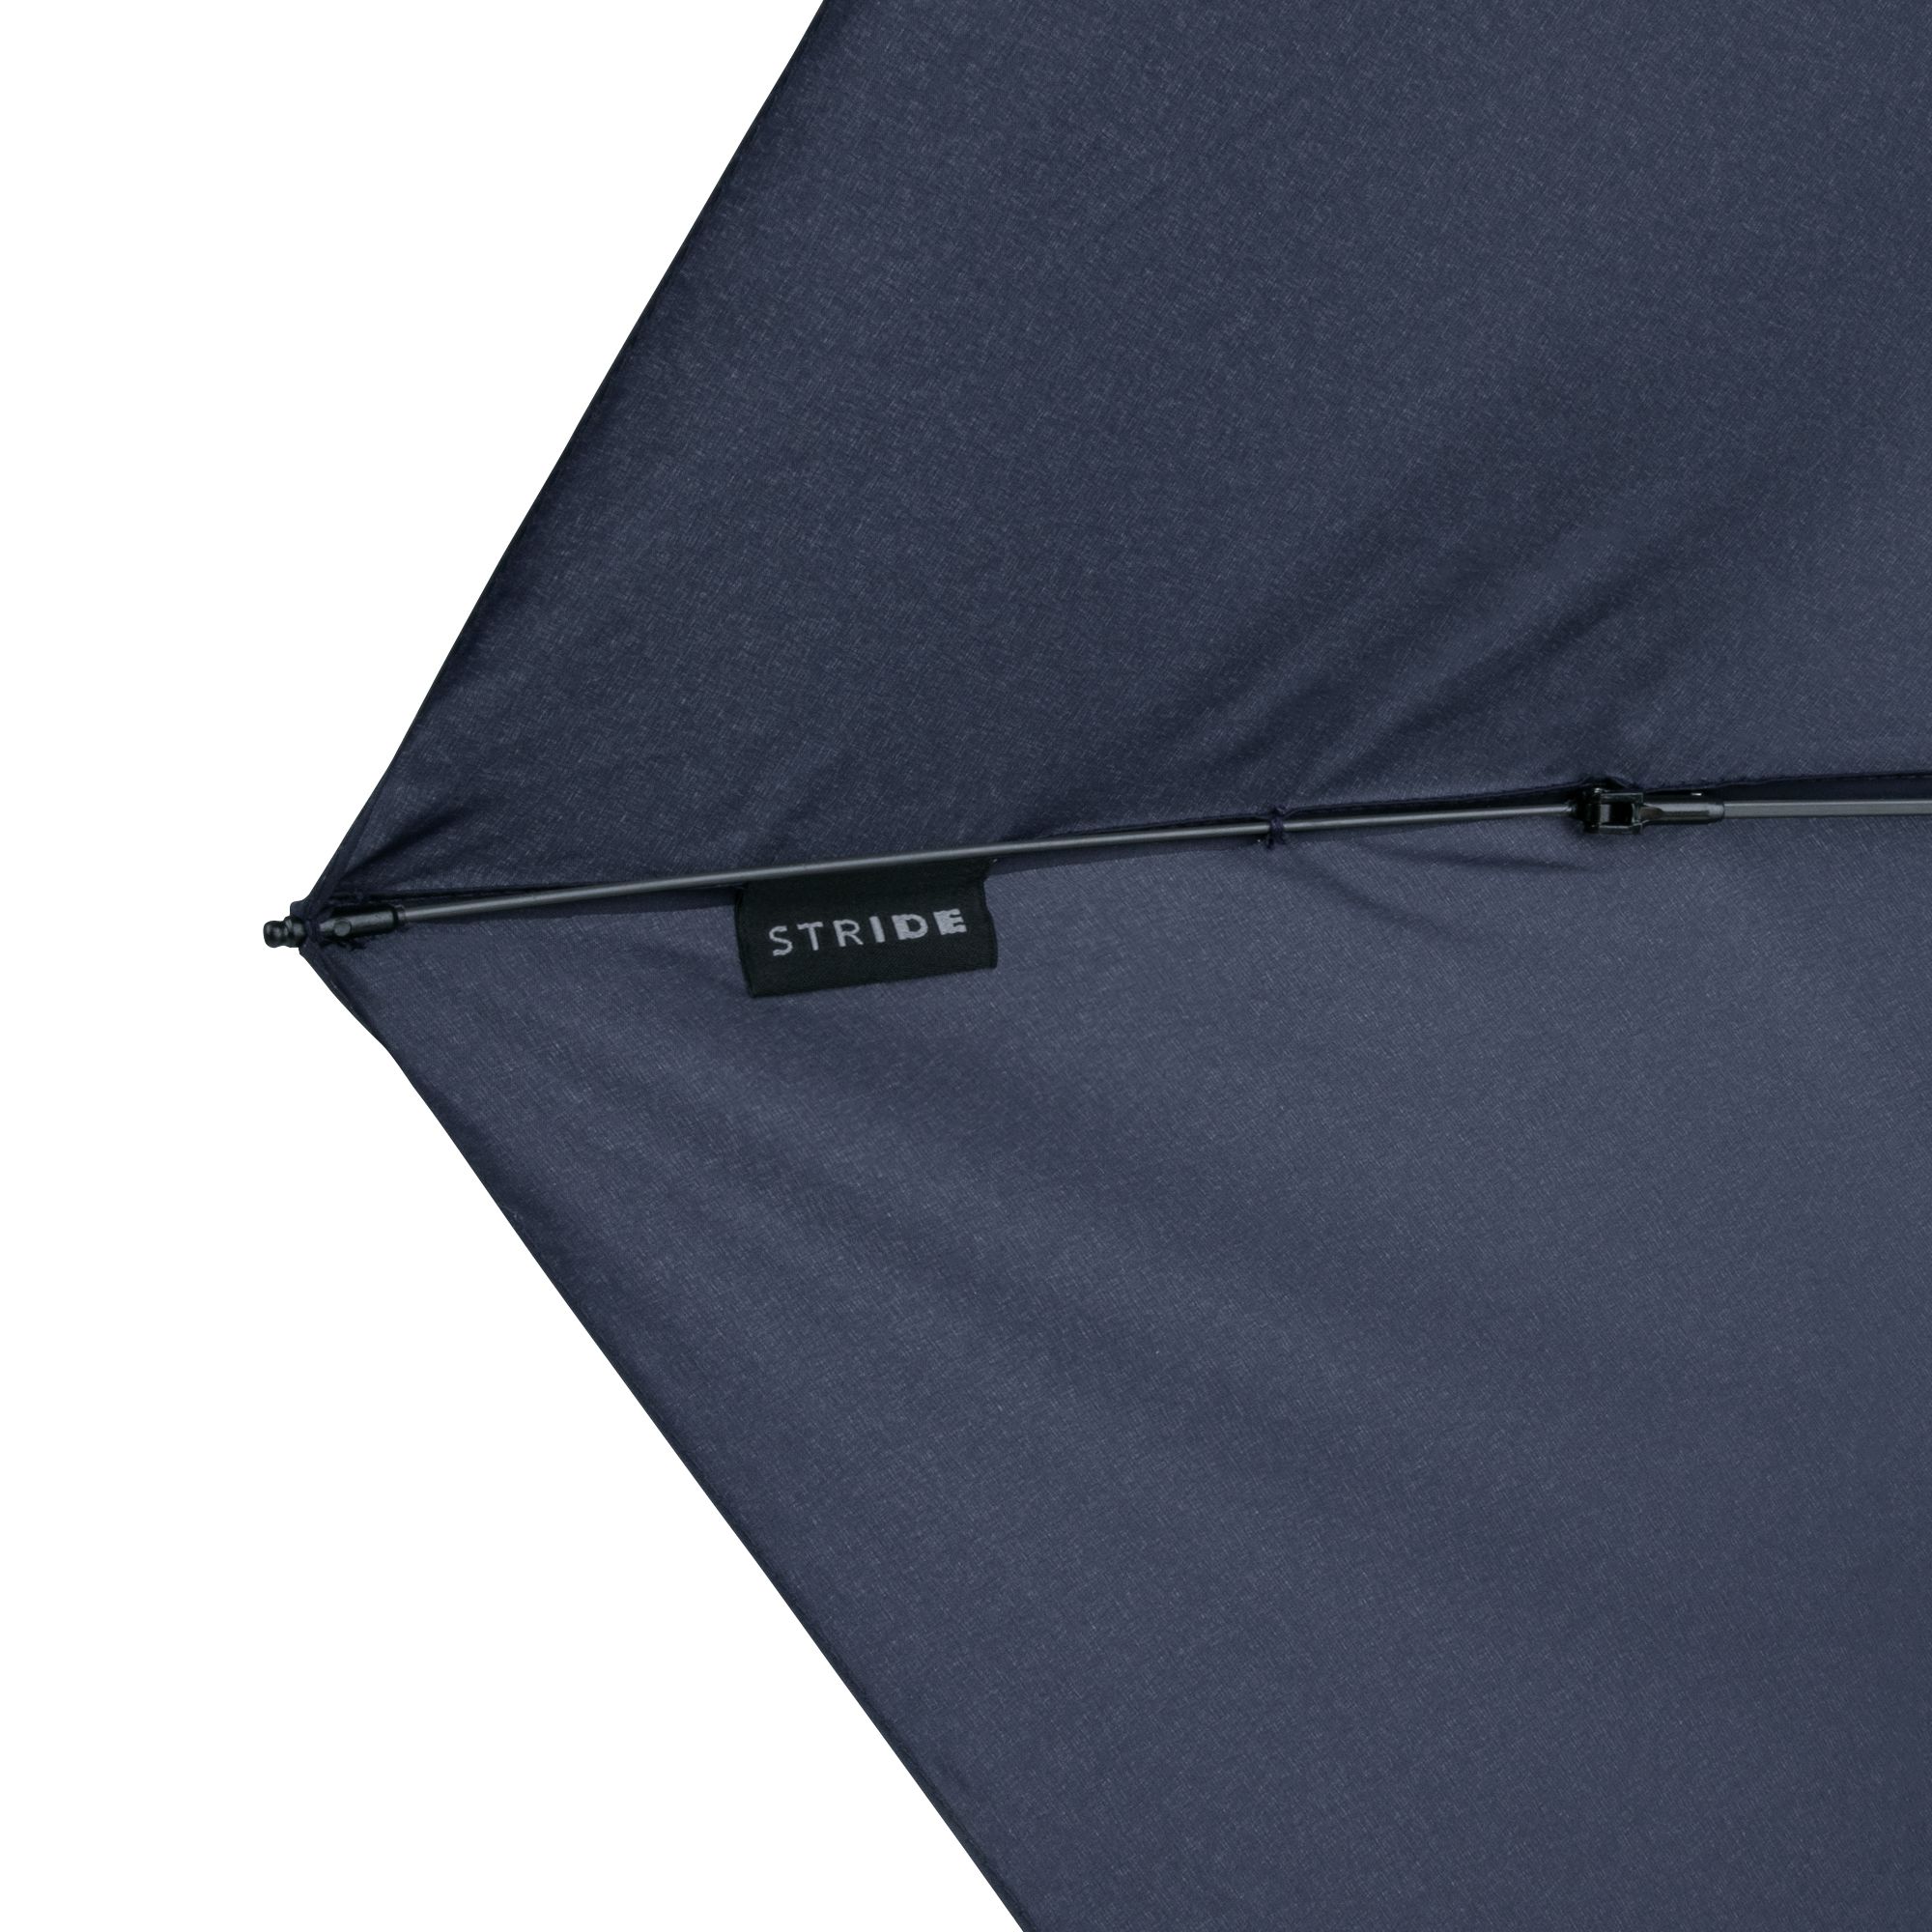 Зонт складной Luft Trek